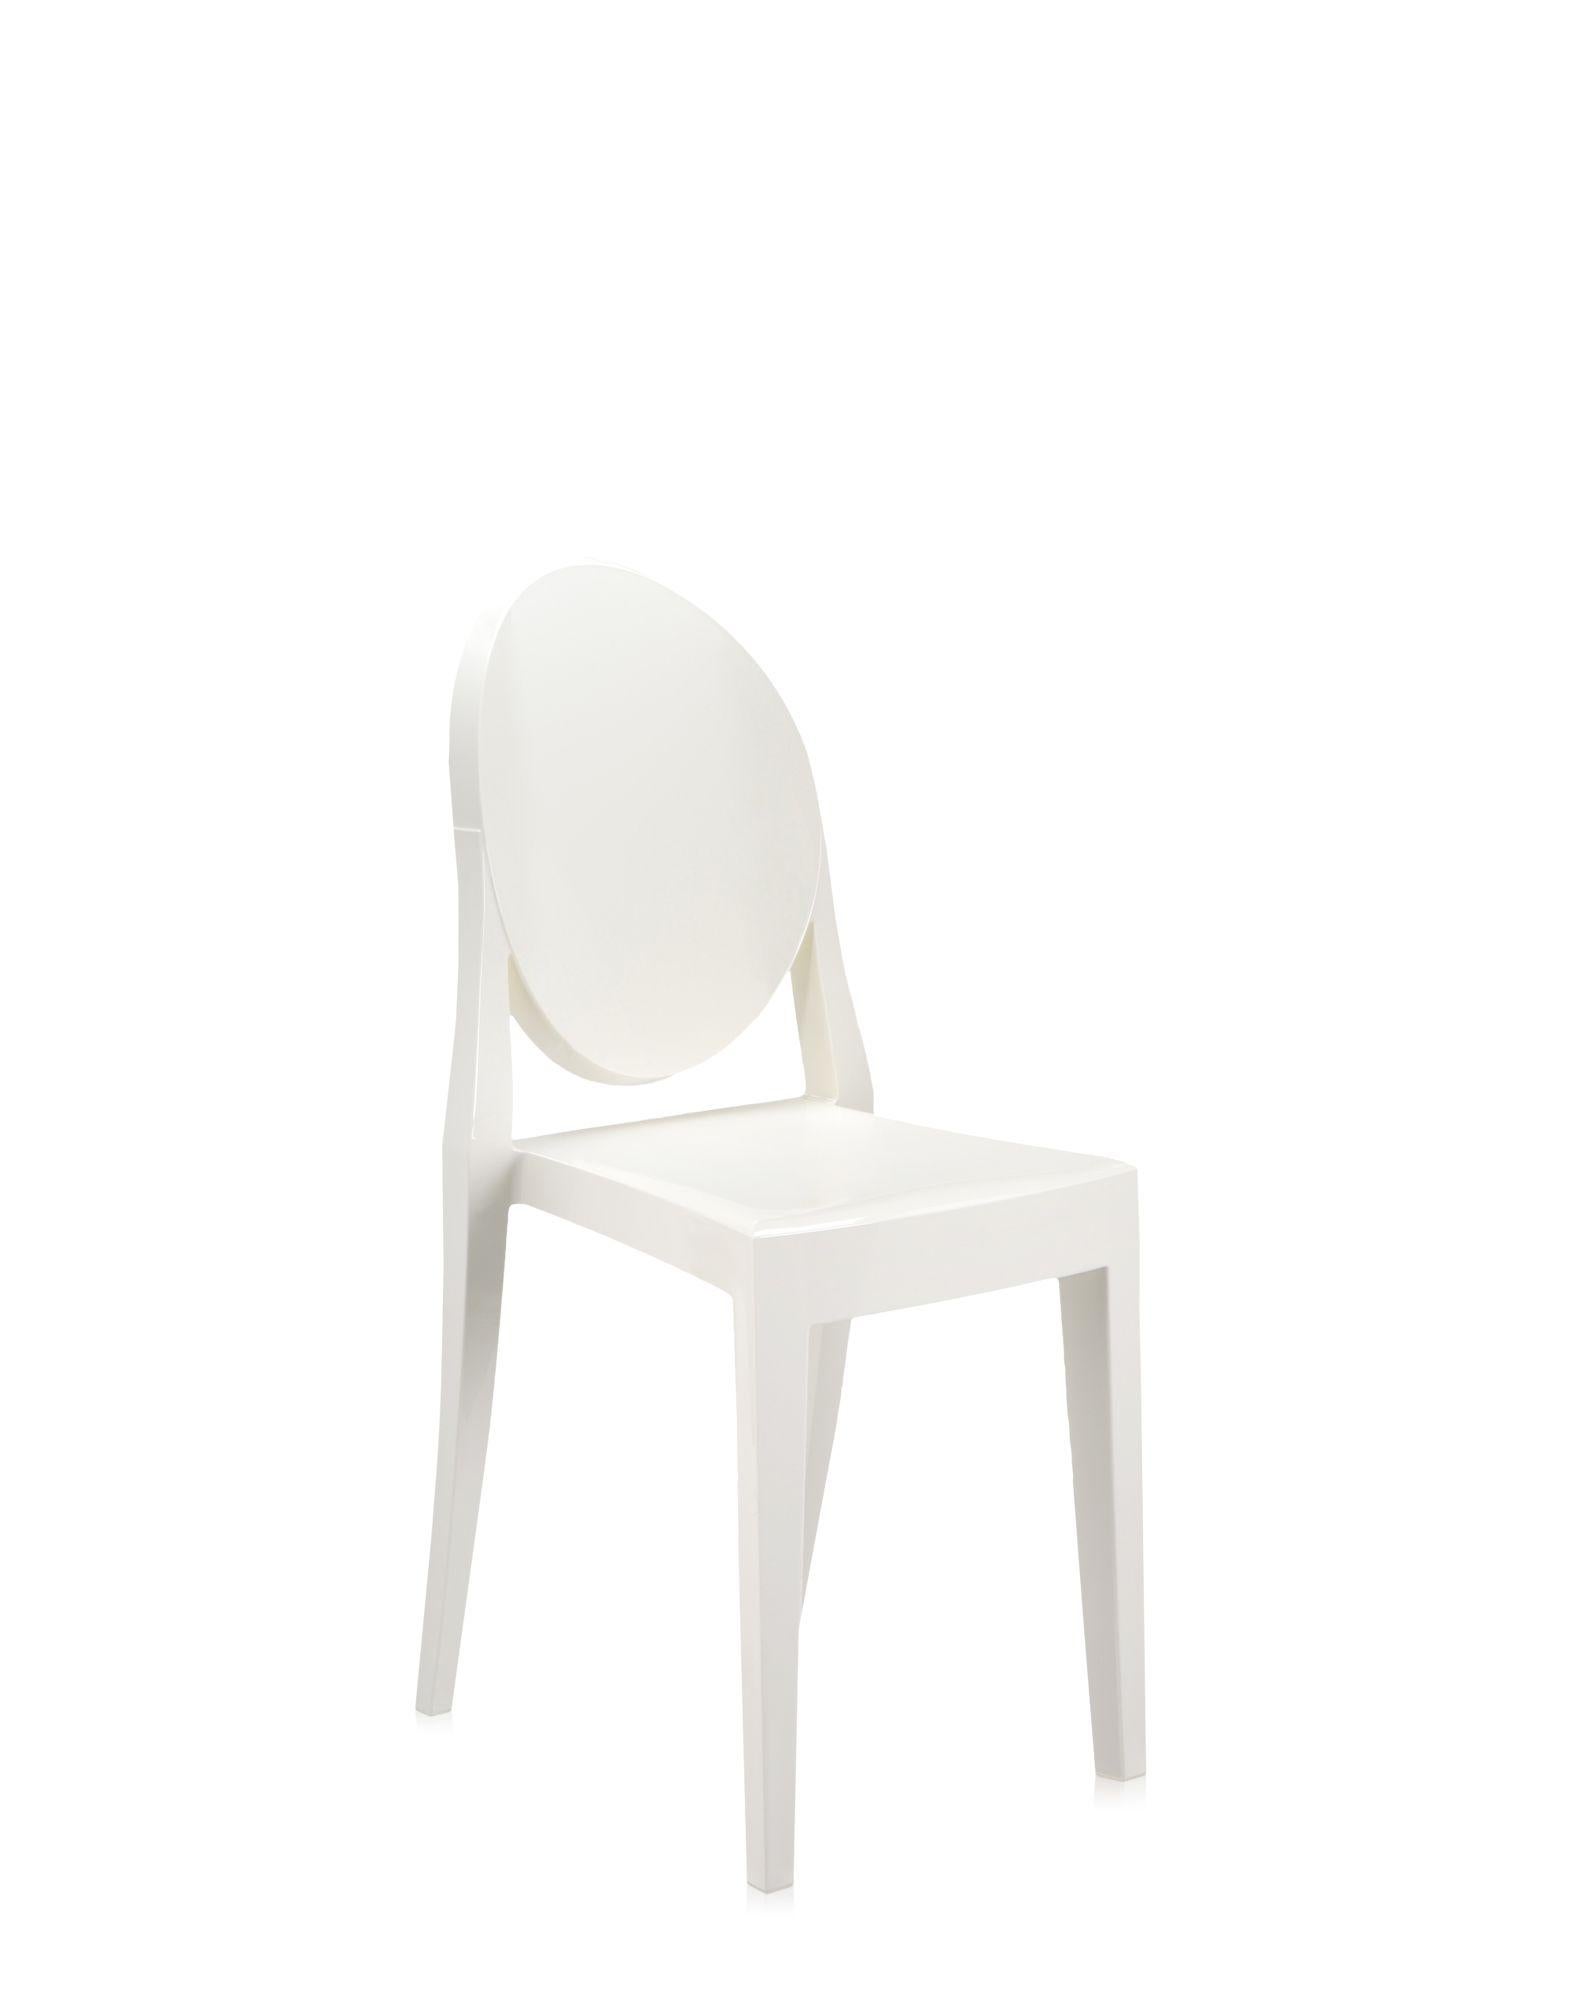 Il s'agit d'une chaise née de lignes classiques avec un dossier arrondi qui rappelle la forme des médaillons antiques, tandis que l'assise est linéaire et géométrique. Le fantôme Victoria est fabriqué en polycarbonate transparent et coloré et formé